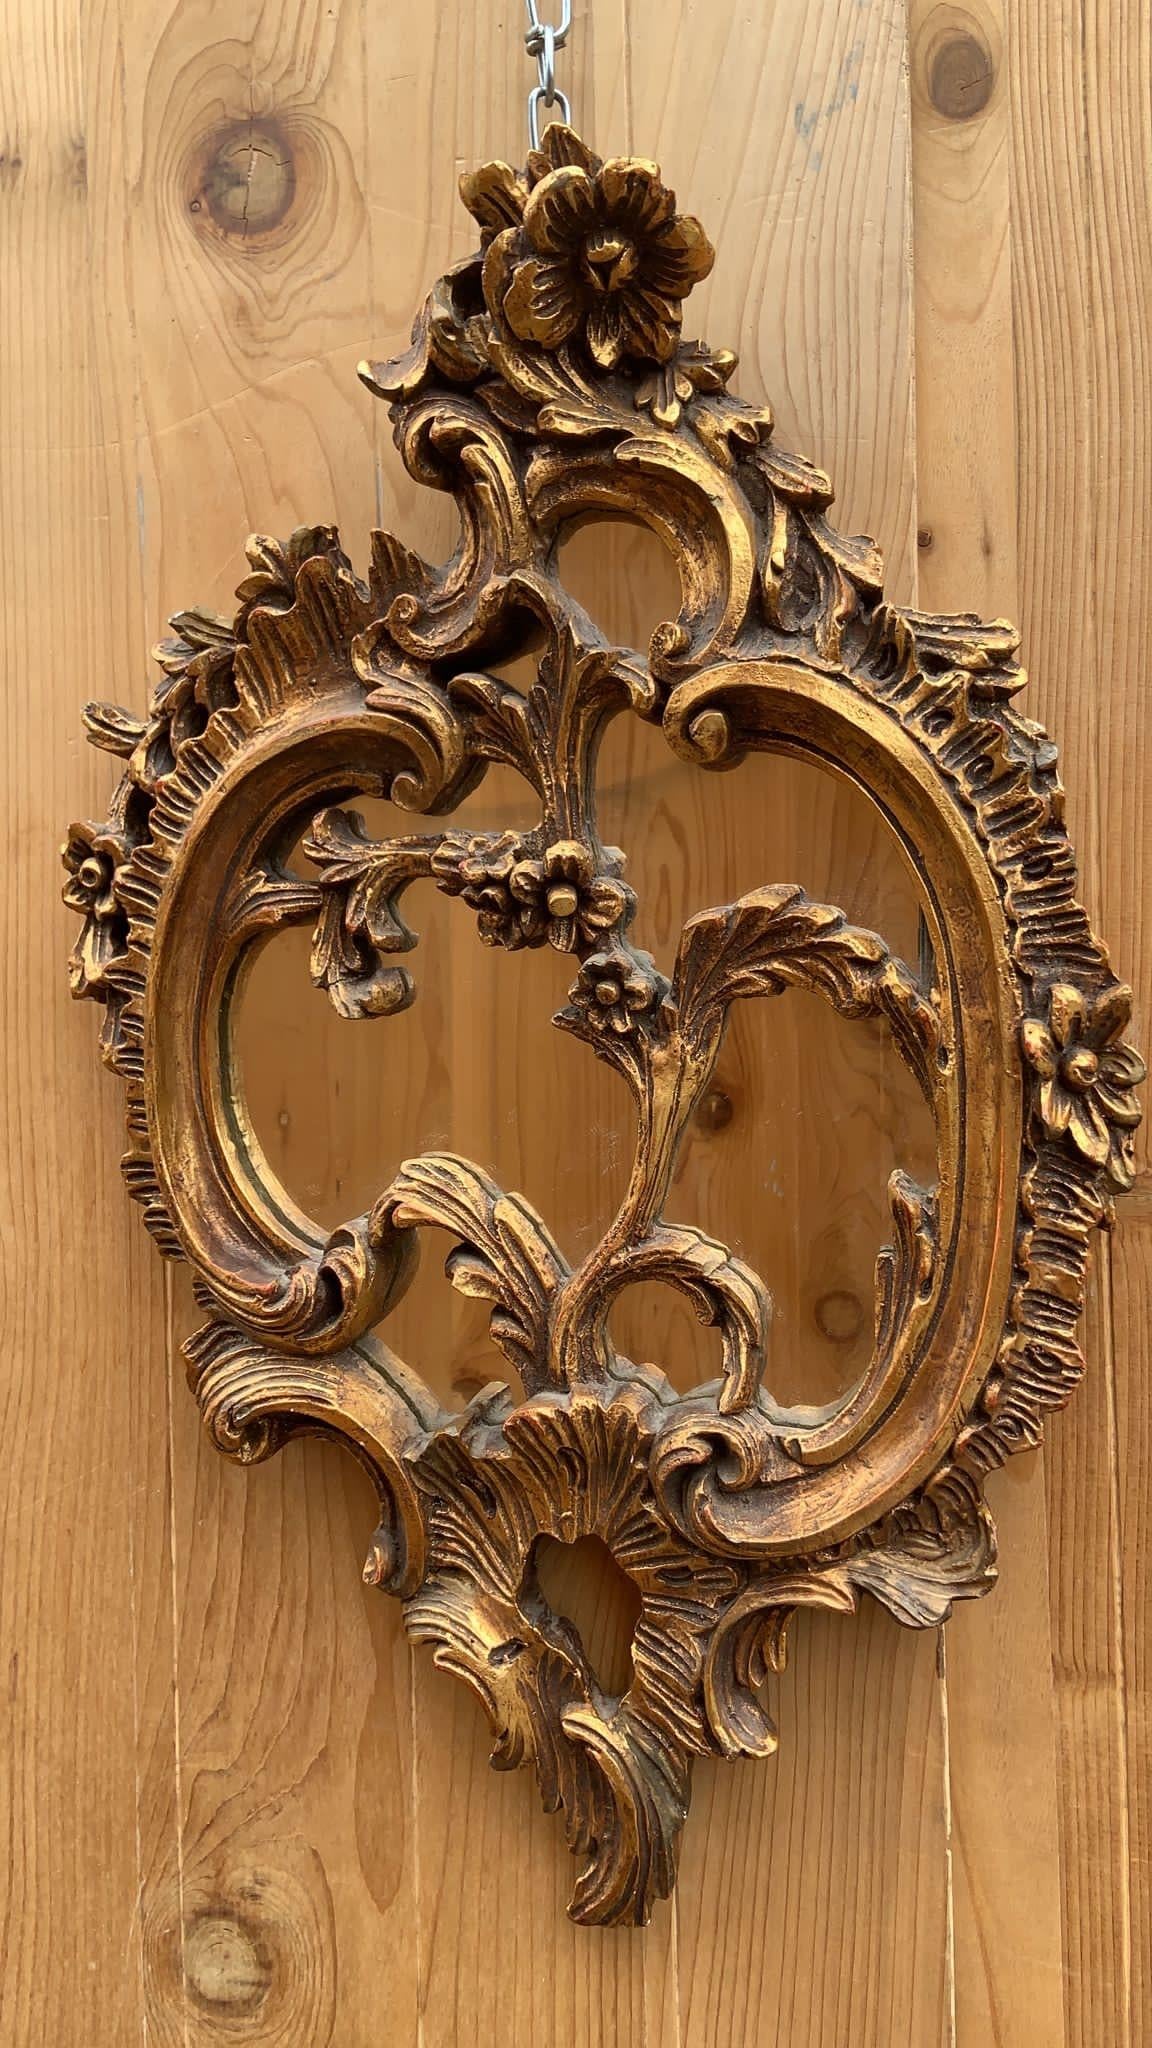 Antique miroir mural rococo italien sculpté et orné de dorures

Un extraordinaire miroir mural de style rococo avec des sculptures florales !  Il s'agit vraiment d'une pièce exceptionnelle !

Circa 1900's

Dimensions :
H 25